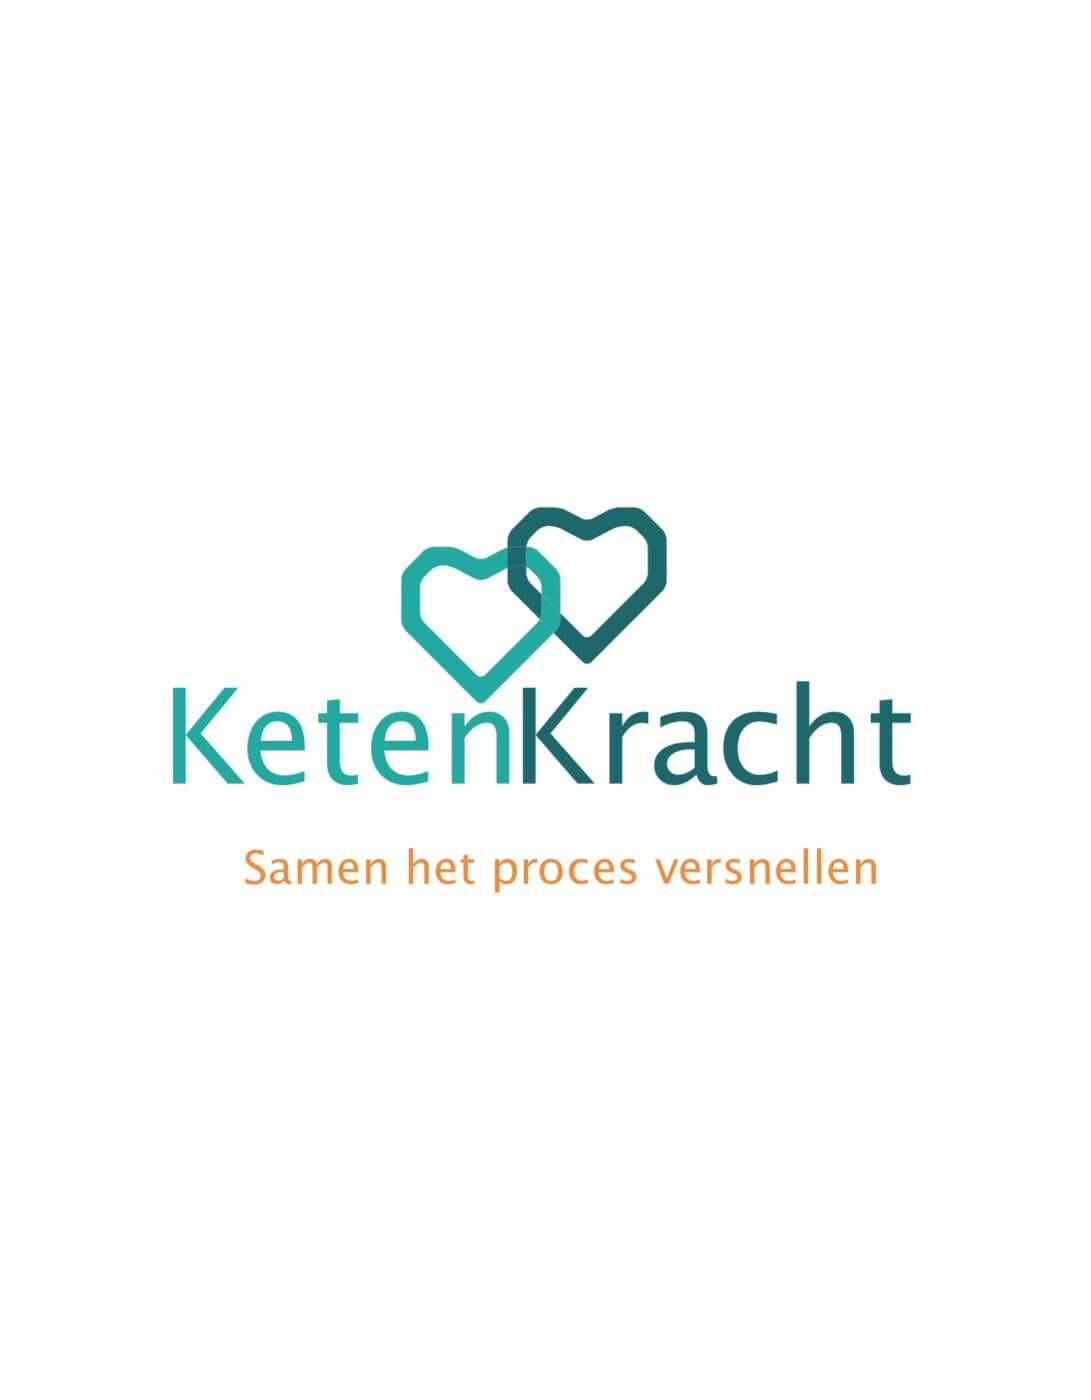 Logo KetenKracht - Samen het proces versnellen